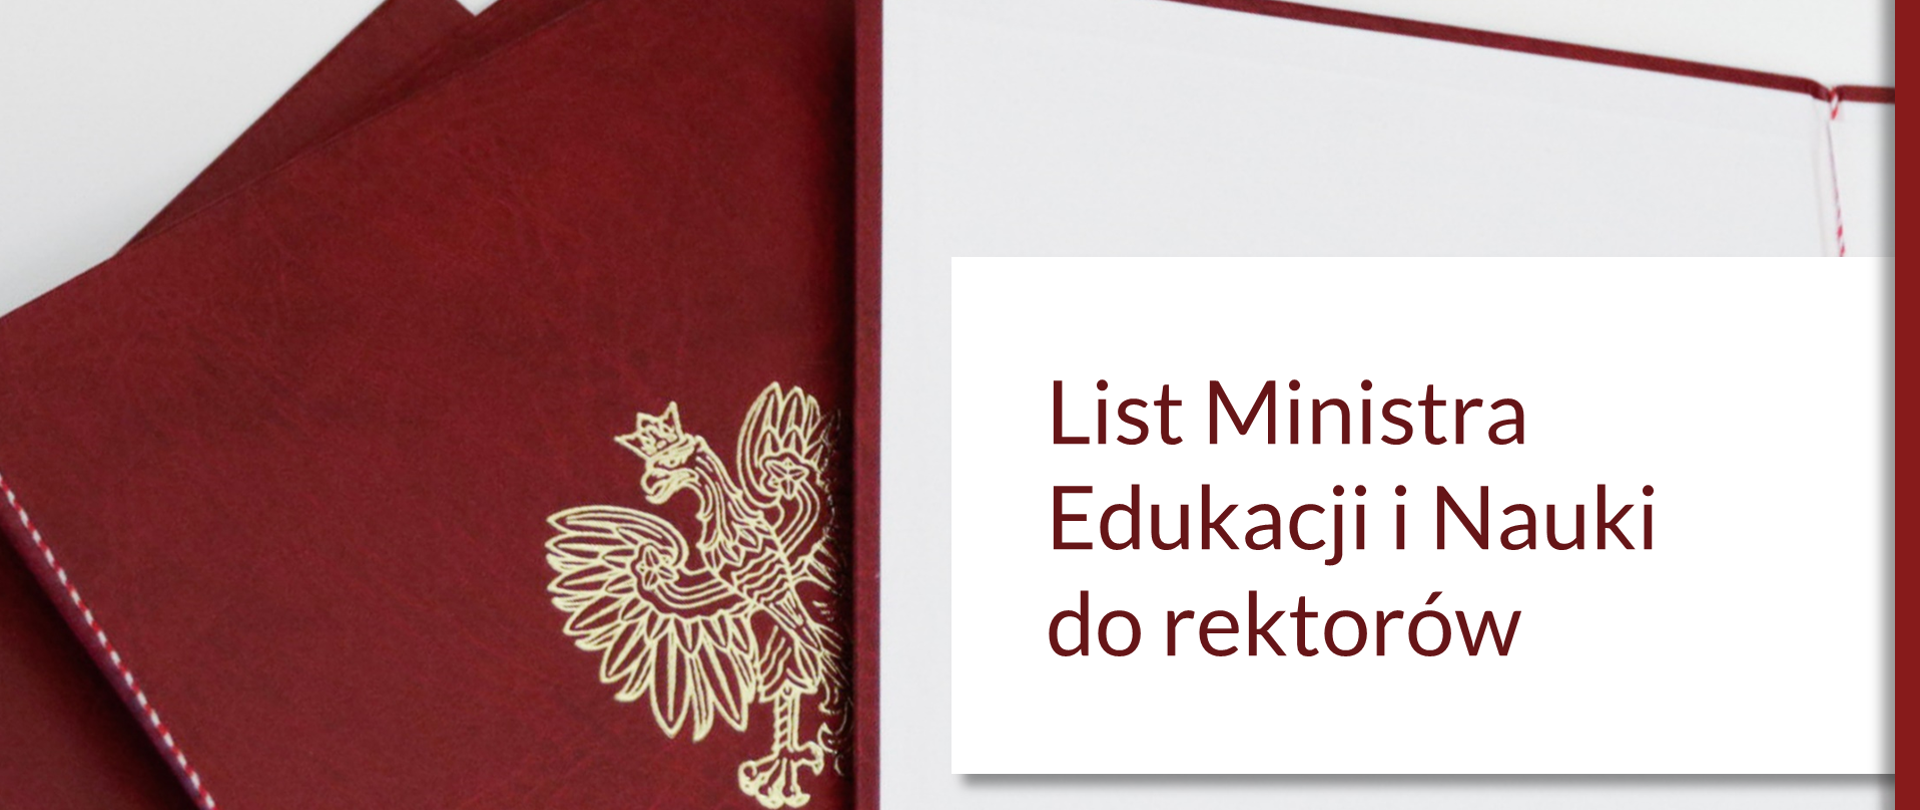 Plansza z napisem bordowym na białym tle List Ministra Edukacji i Nauki do rektorów